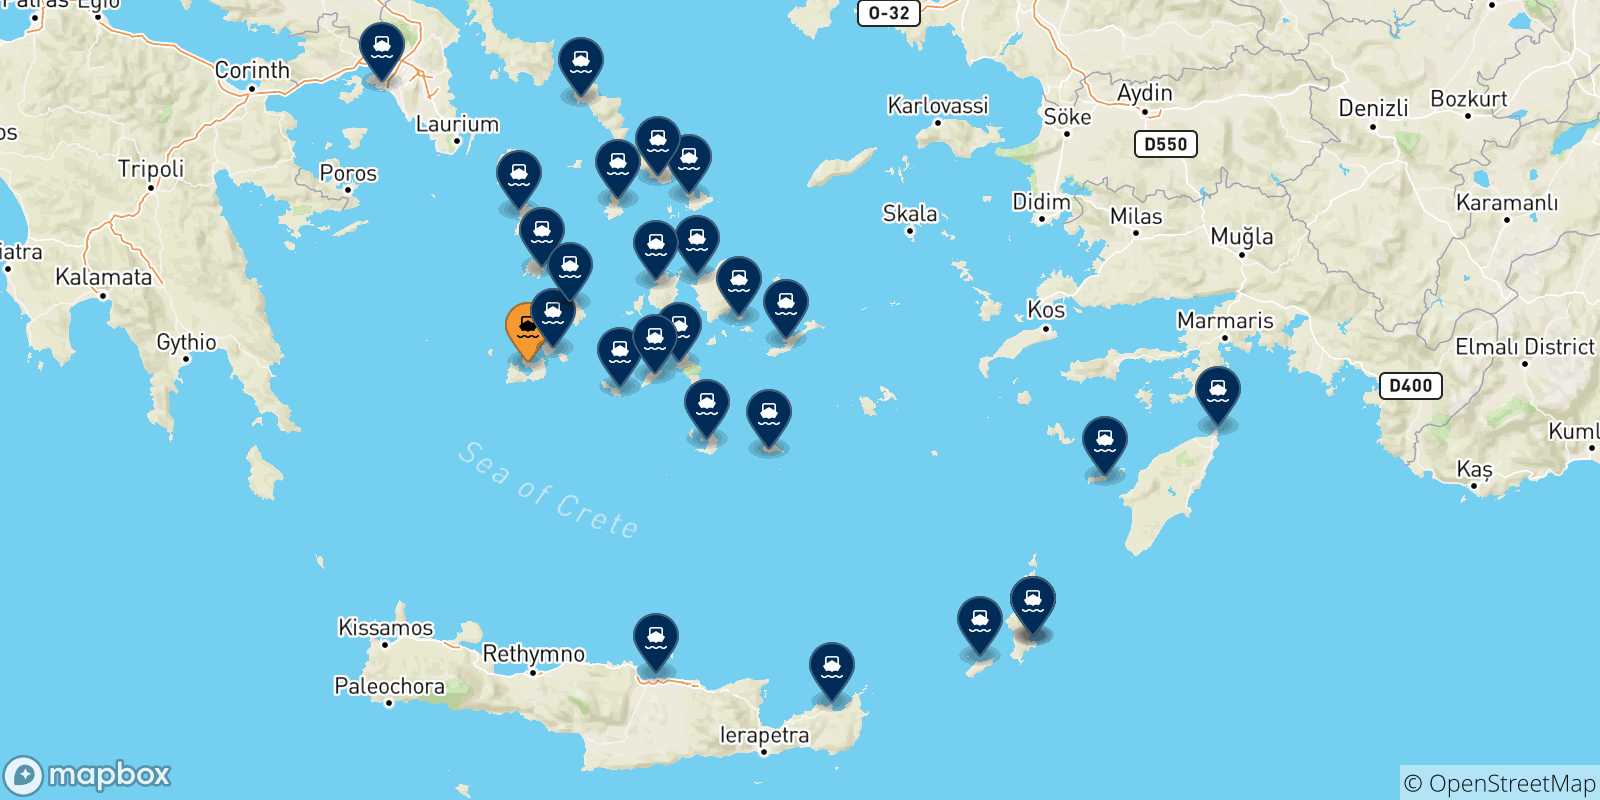 Mappa delle possibili rotte tra Milos e la Grecia